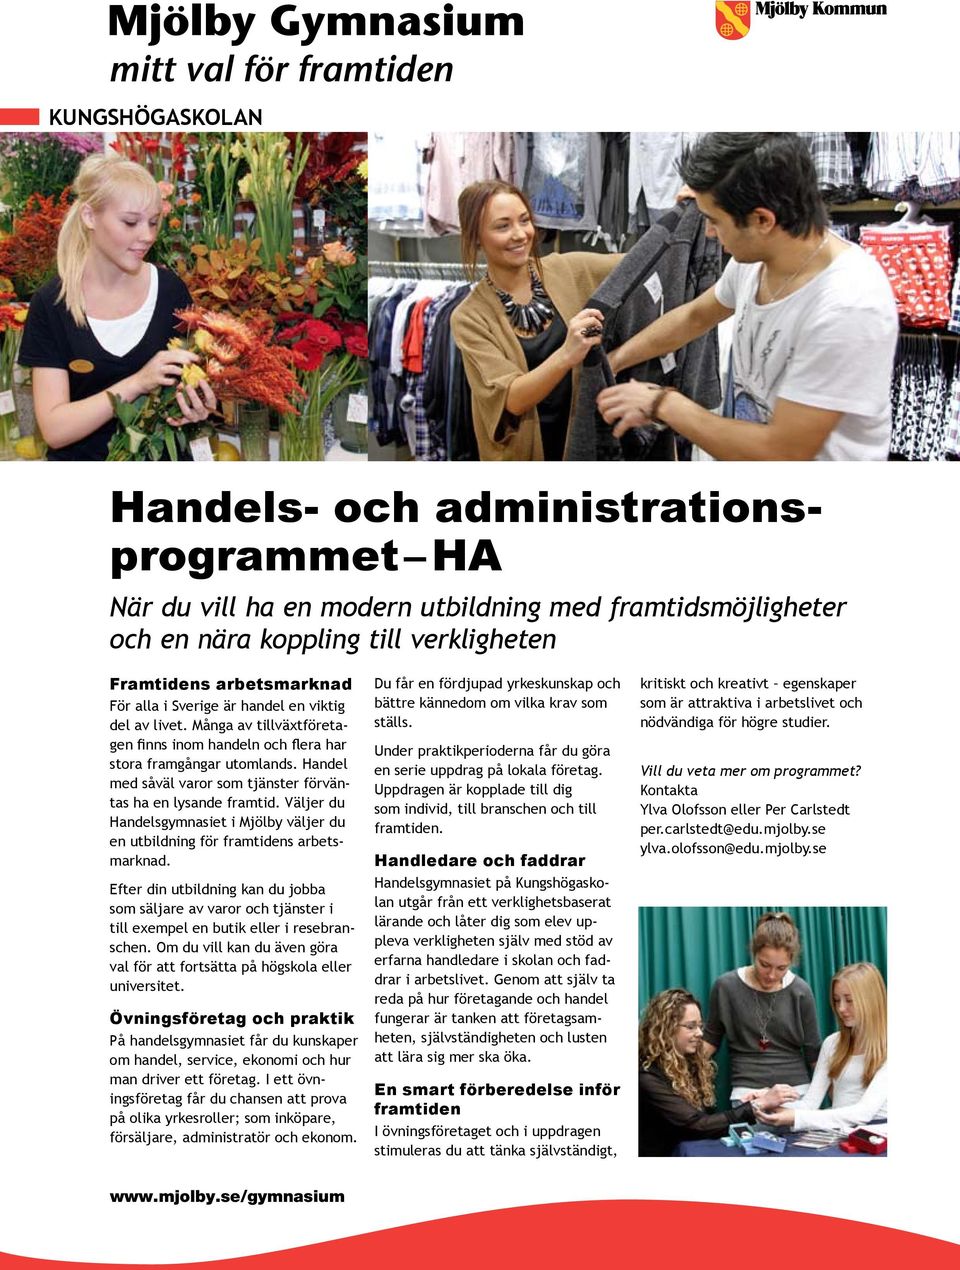 Väljer du Handelsgymnasiet i Mjölby väljer du en utbildning för framtidens arbetsmarknad.